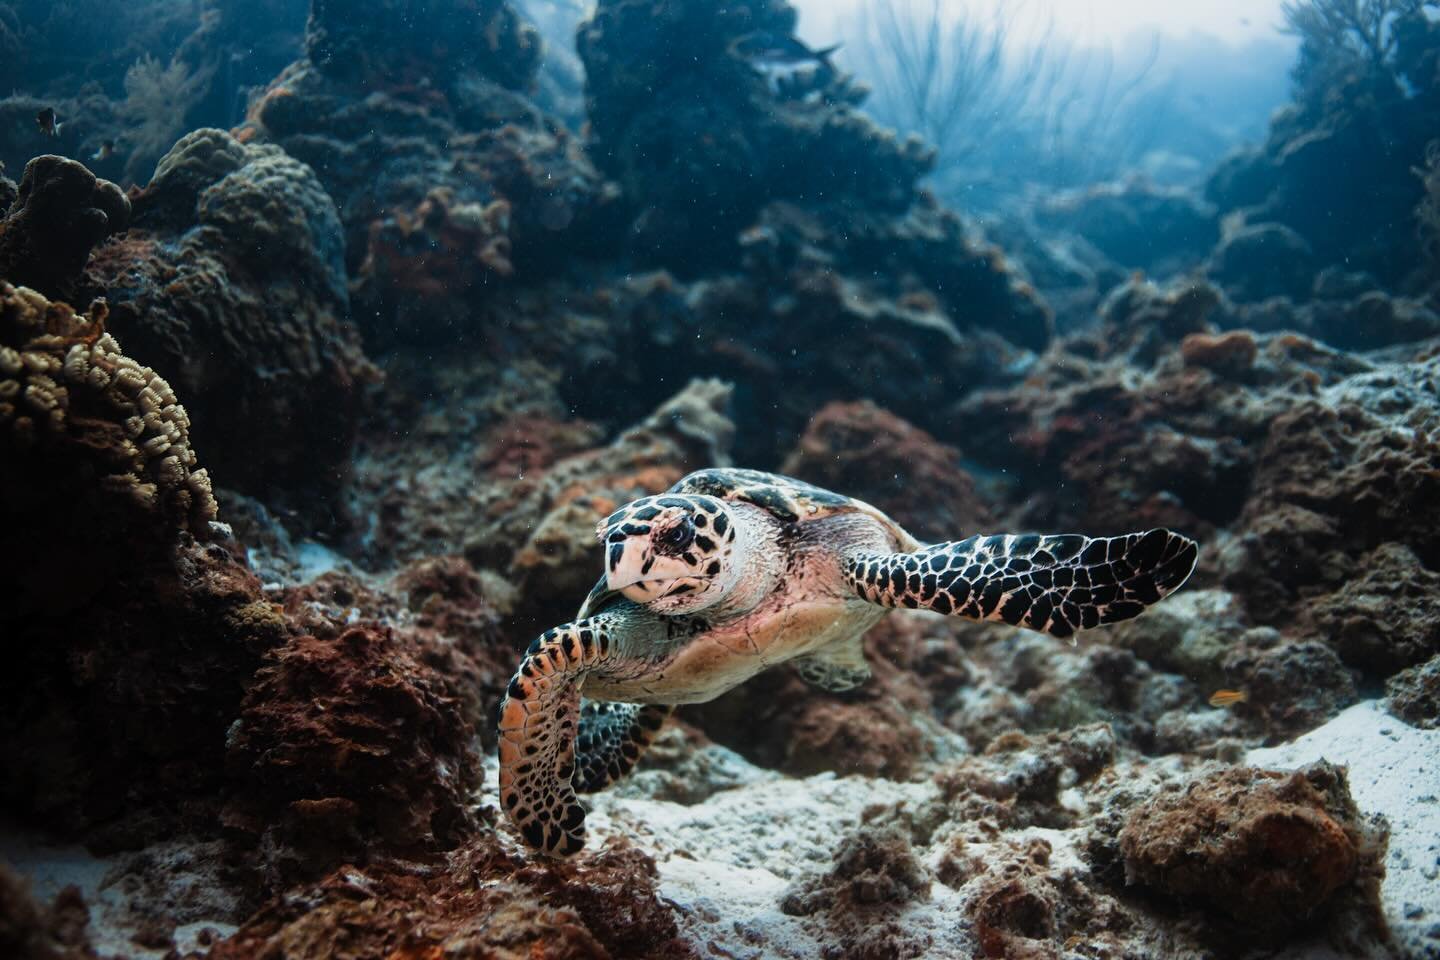 #UnderwaterPhotography
#OceanConservation
#SeaTurtleSighting
#MarineBiology
#NaturePhotography
#EndangeredSpecies
#WildlifePhotography
#OceanLife
#TurtlePhotography